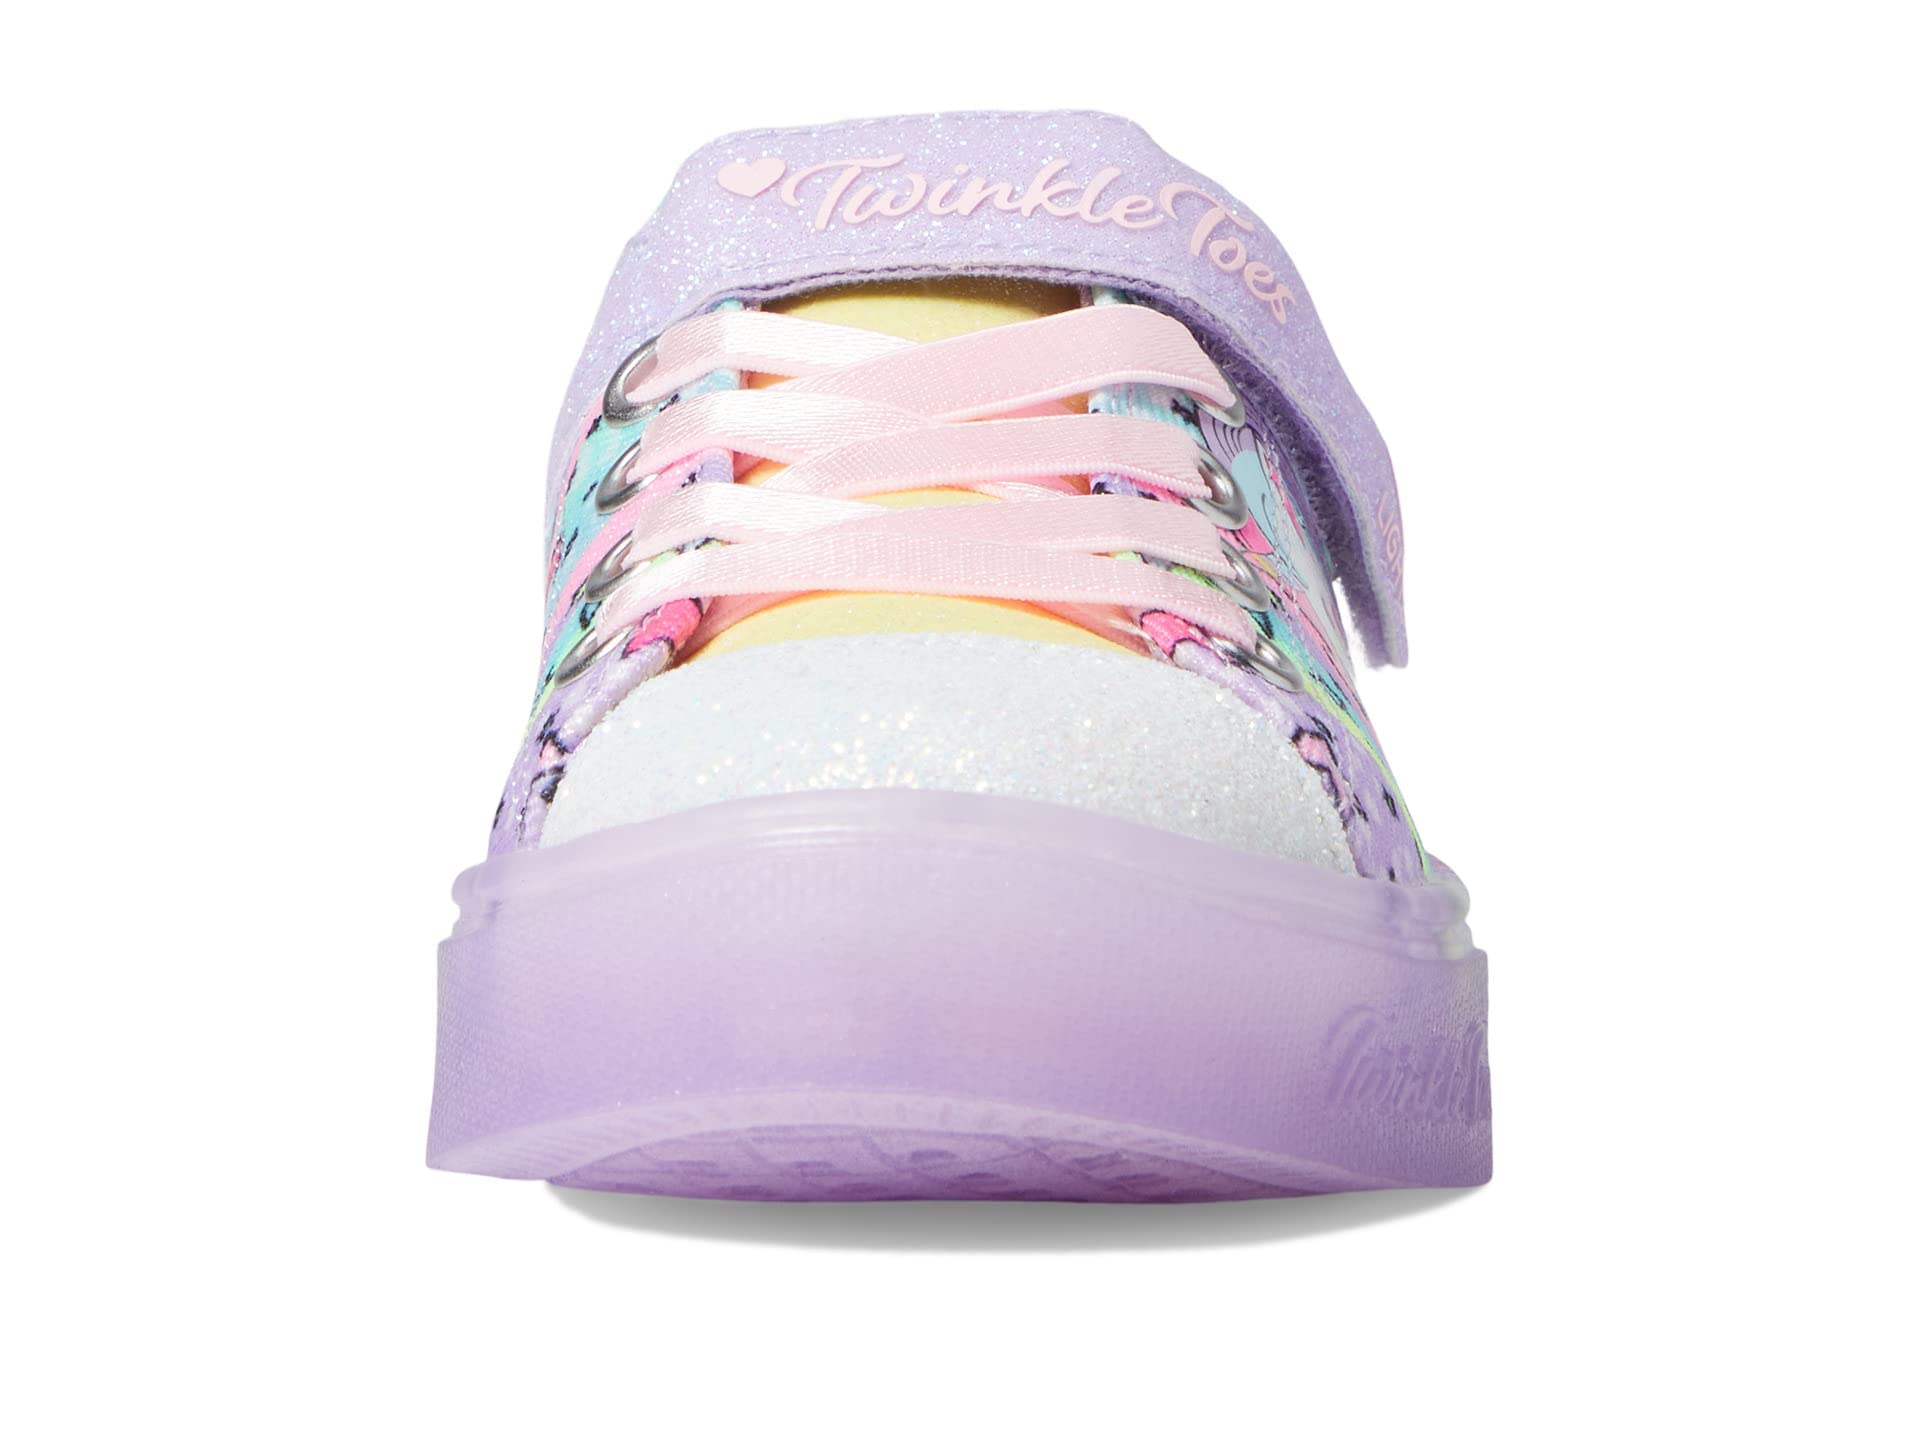 Skechers Kids Girls Toes Twinkle Sparks Ice-Unicorn Bu Sneaker, Lavender/Multi, 3 Little Kid